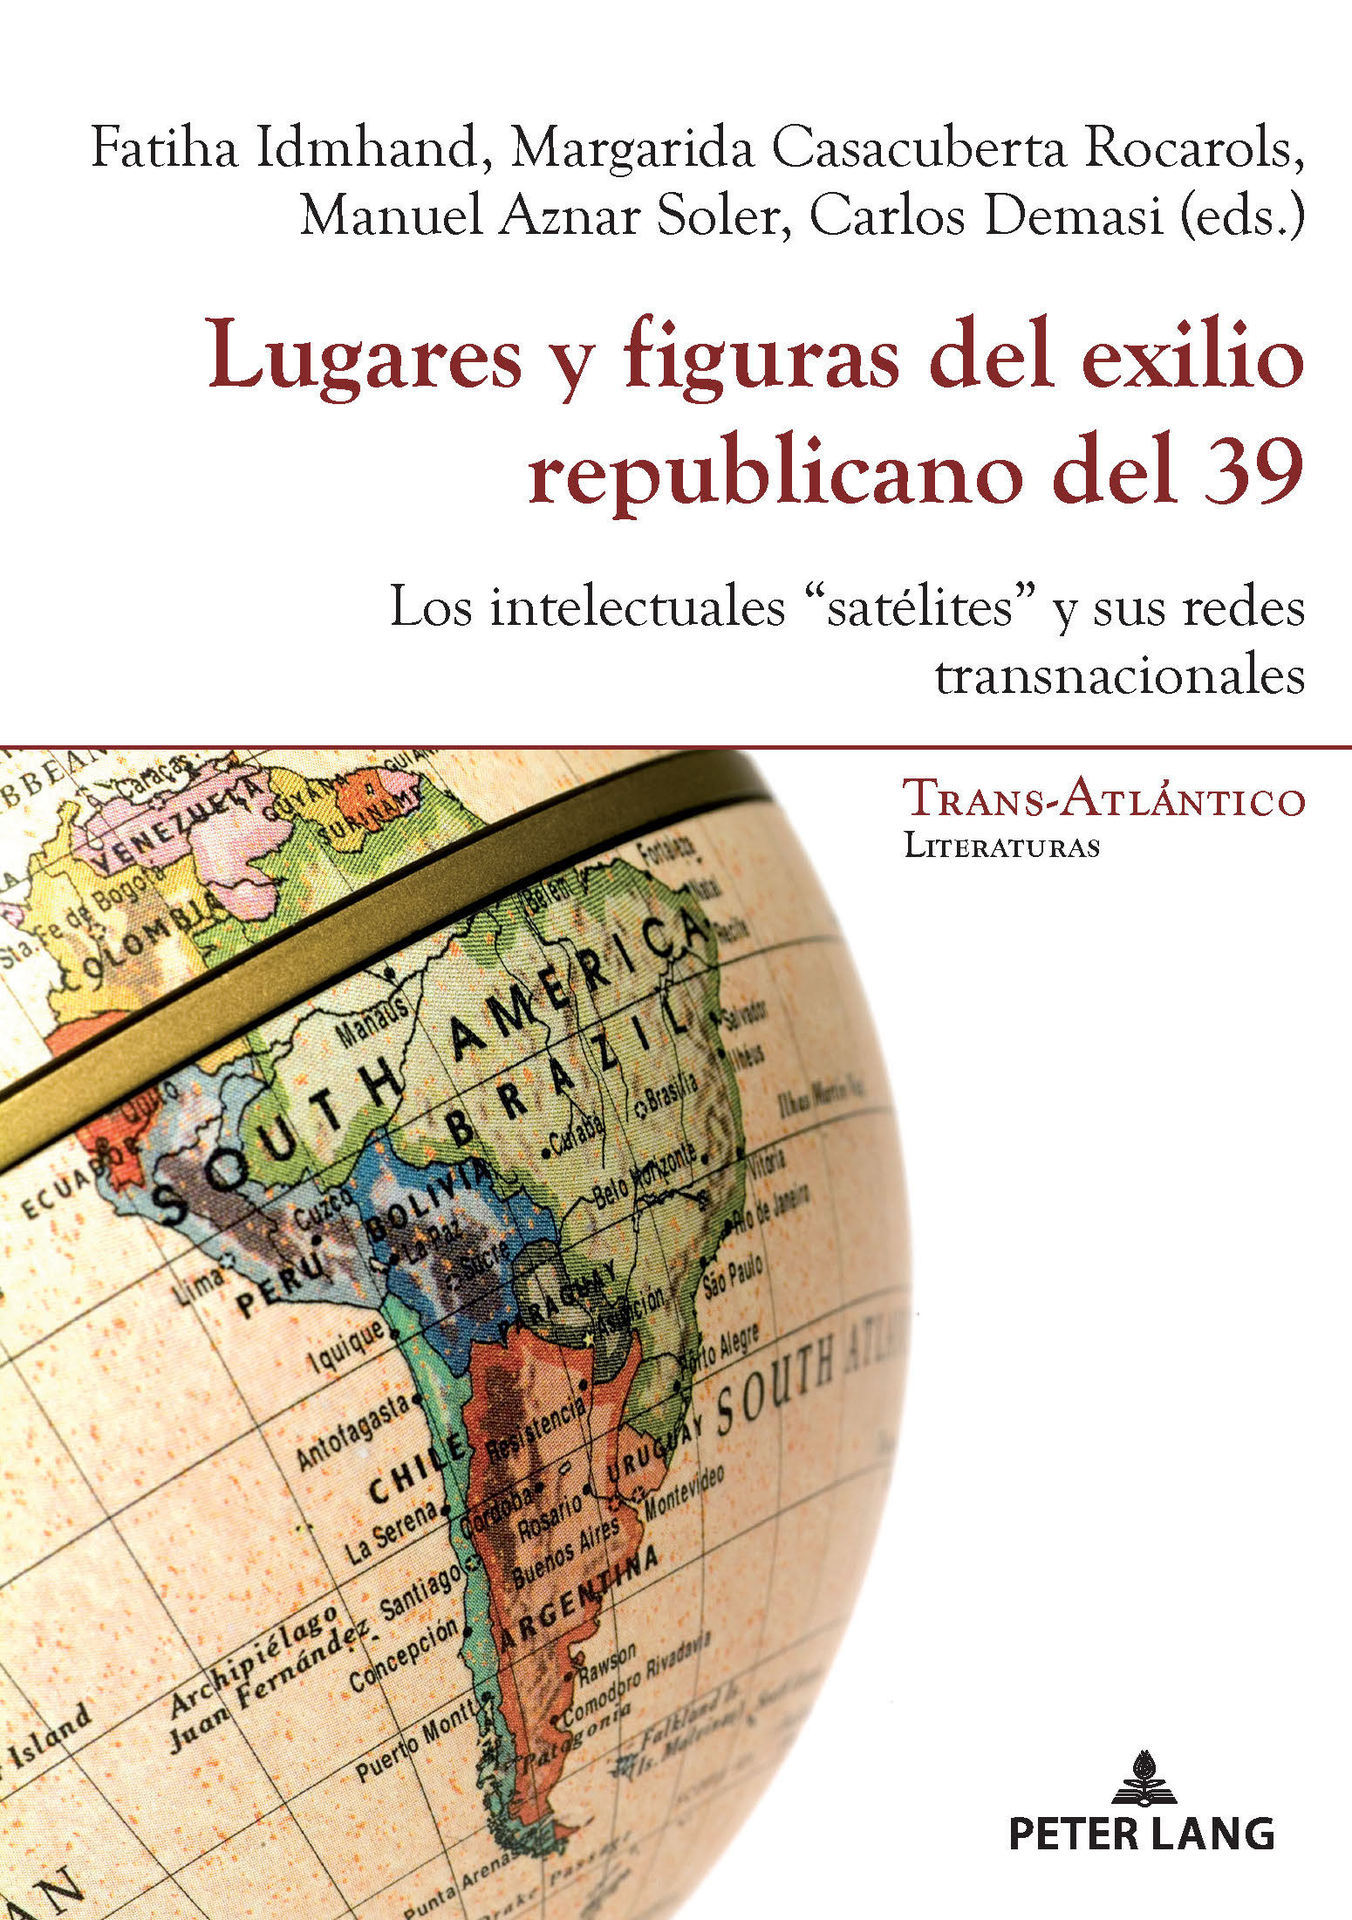 Imagen de portada del libro Lugares y figuras del exilio republicano del 39